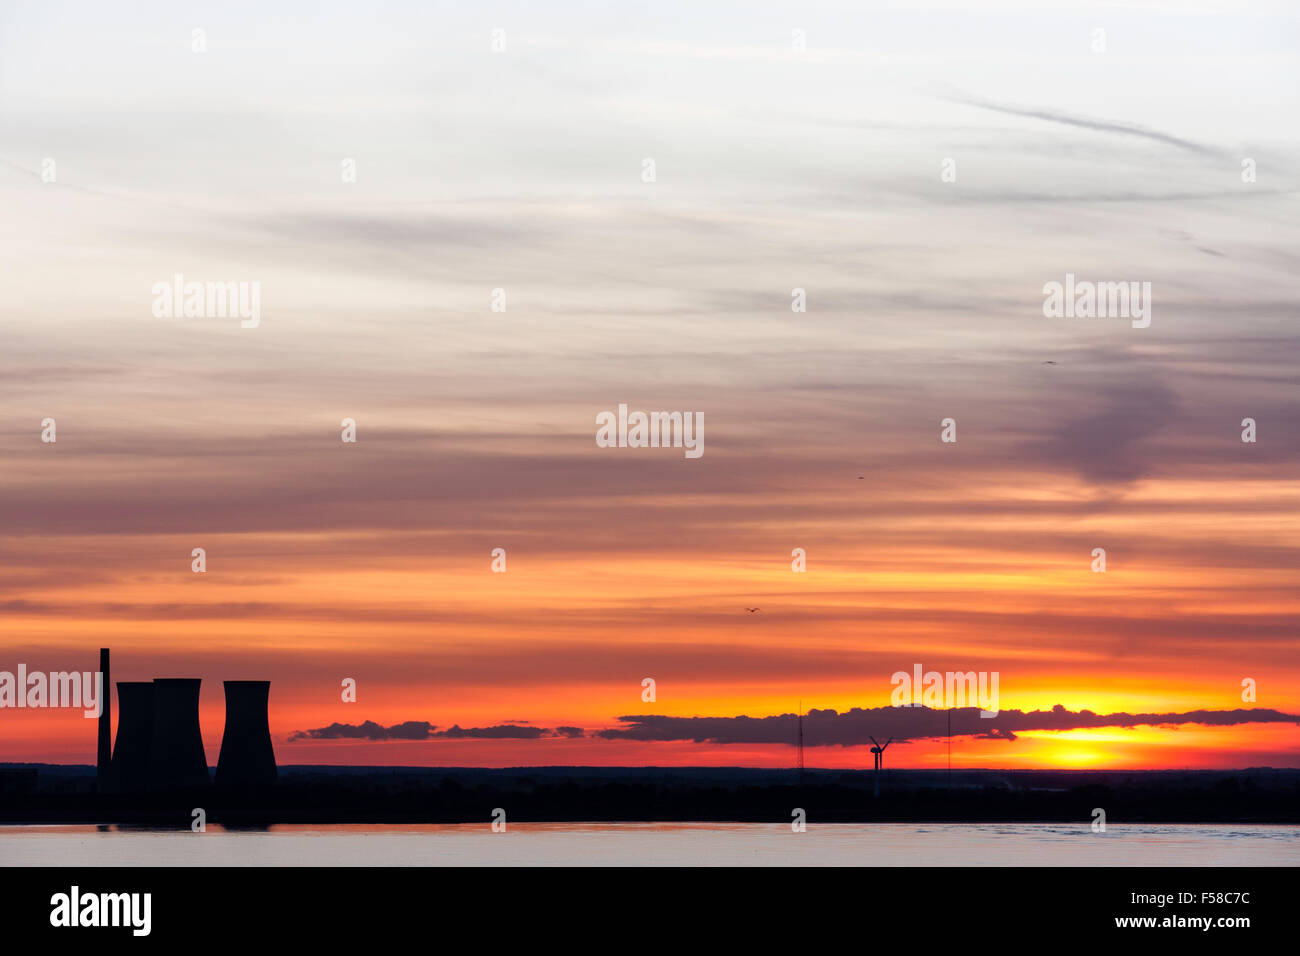 Sonnenuntergang, Sonnenuntergang, über Pegwell Bay in Ramsgate an der Küste von Kent. Kühltürme von Richborough Power Station gegen den Himmel. Stockfoto